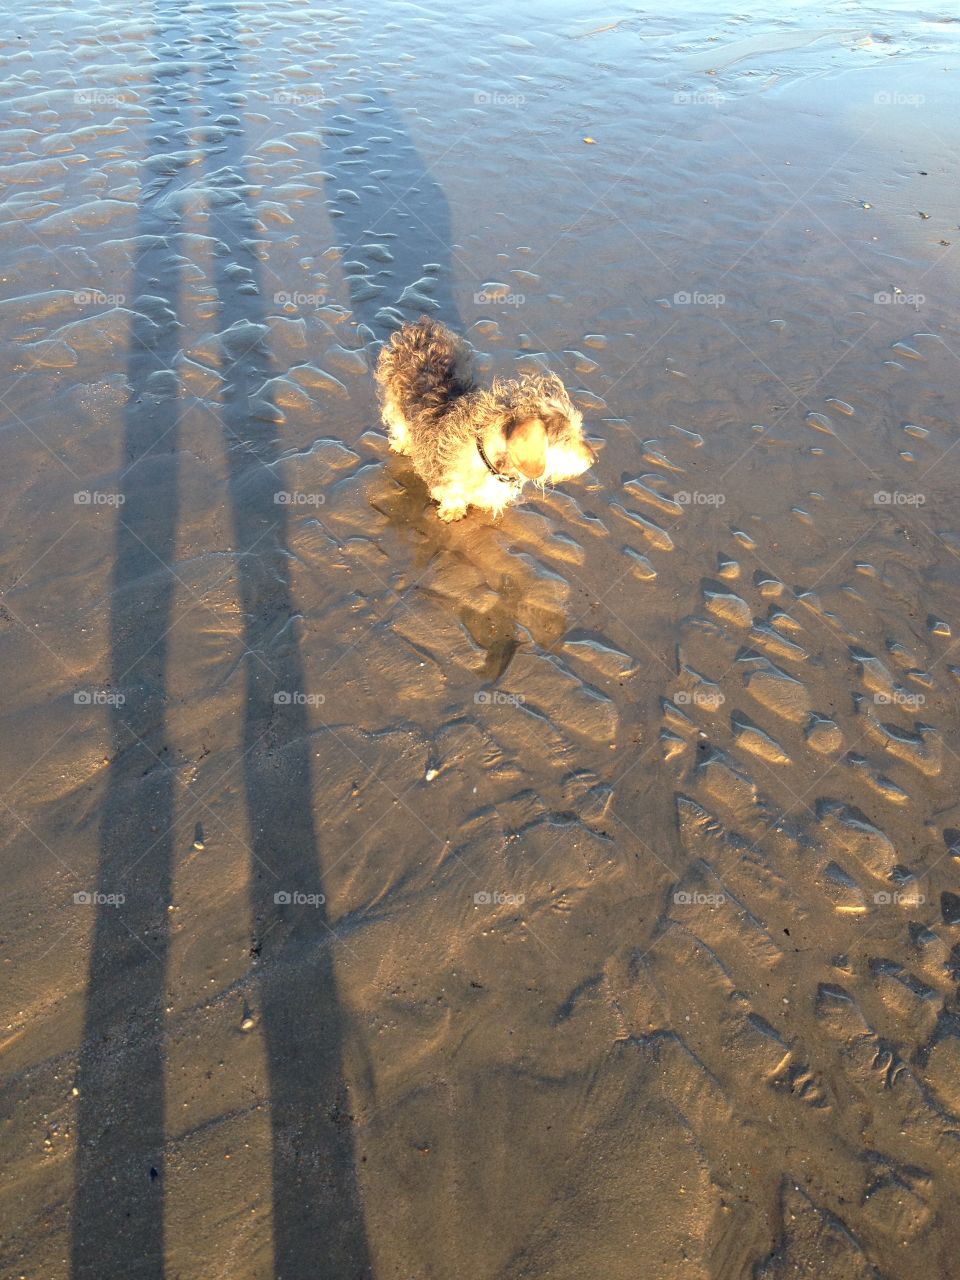 Rocky walking across a sandy beachy